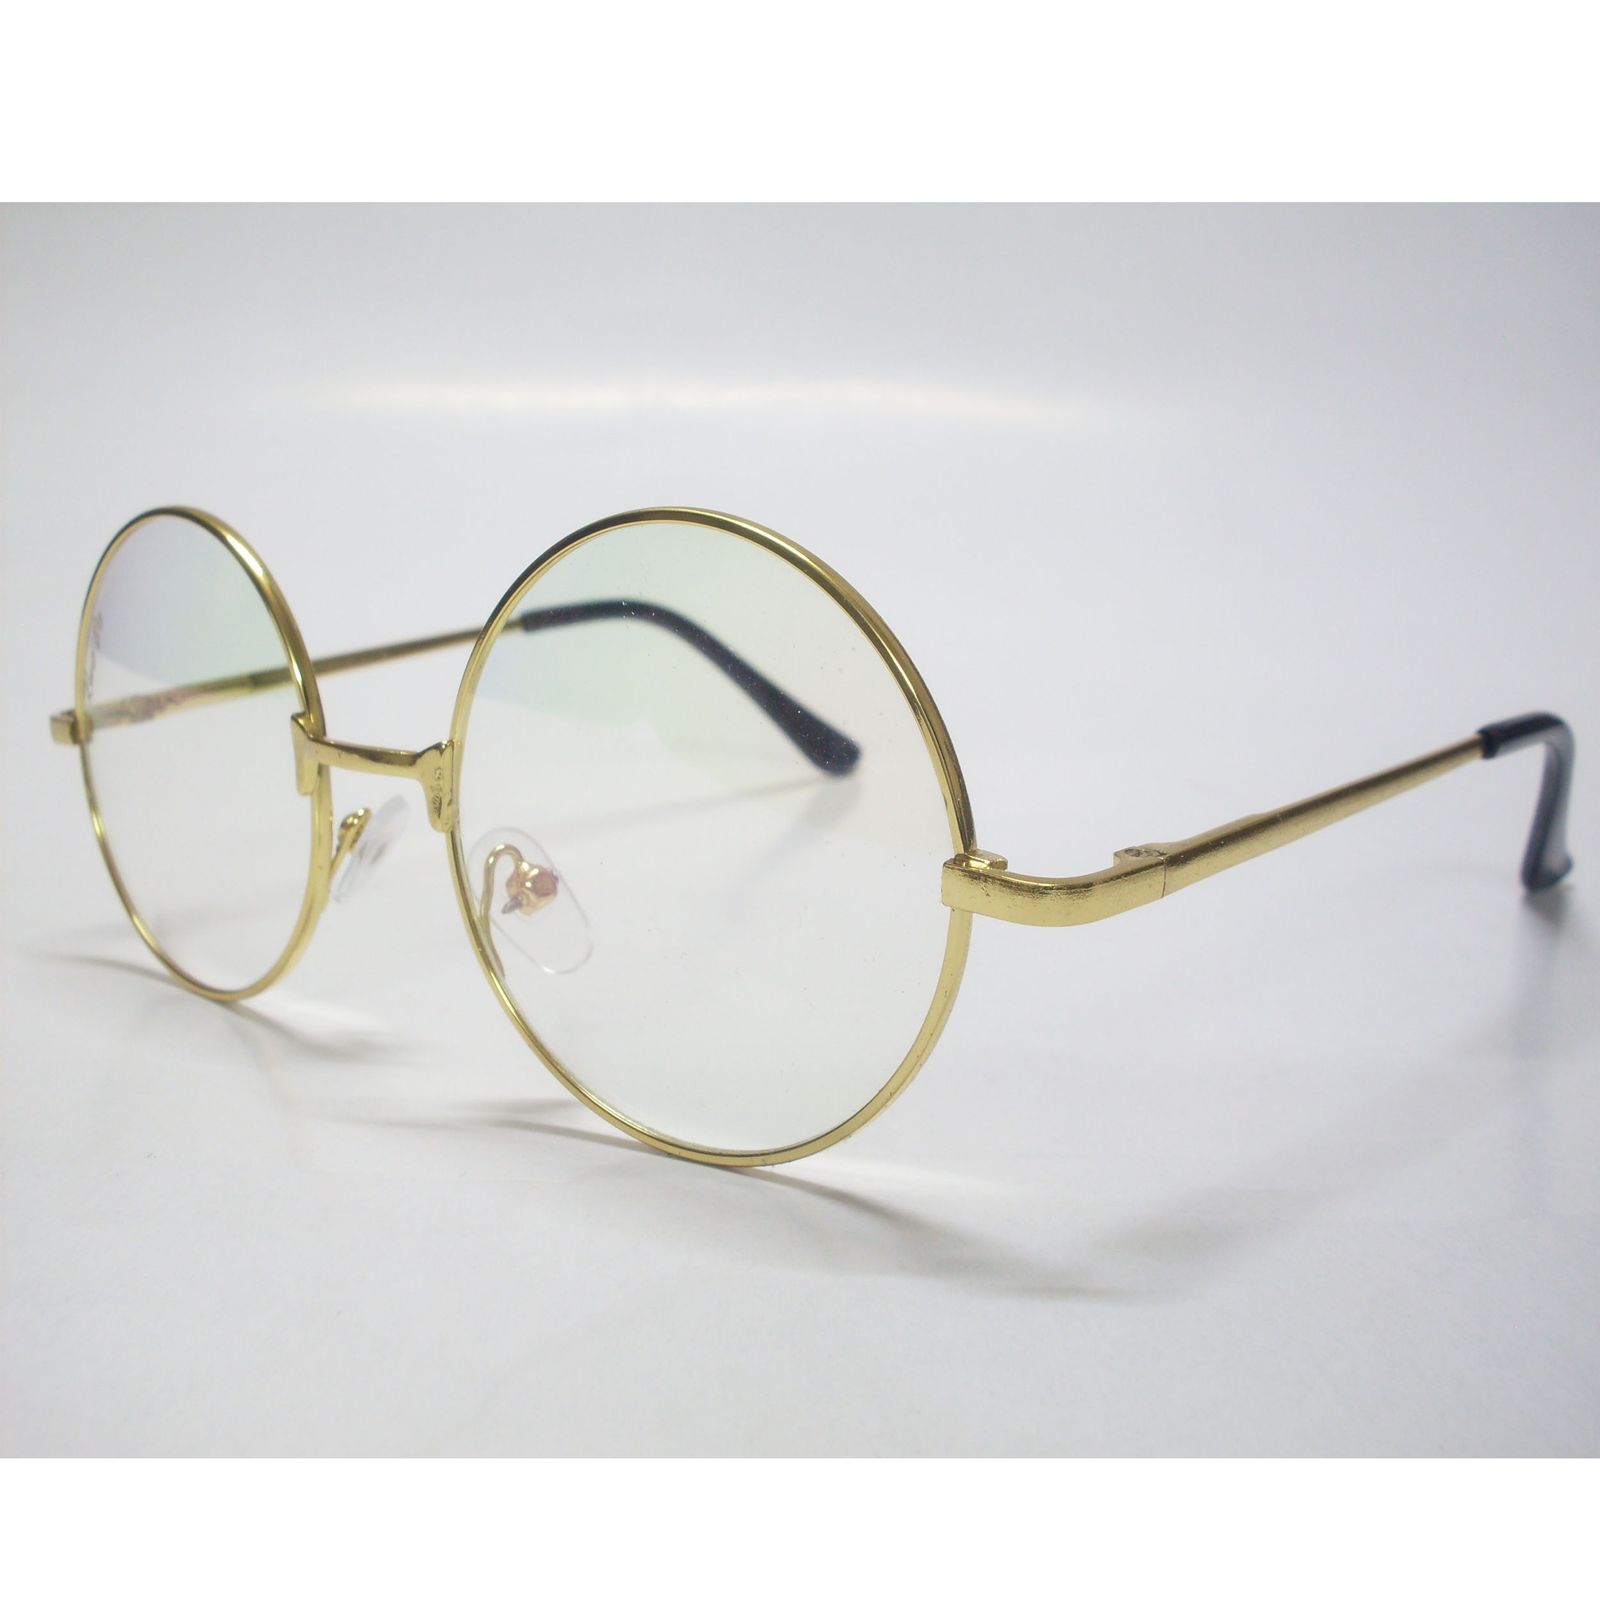 فریم عینک طبی مدل T150031 -  - 3